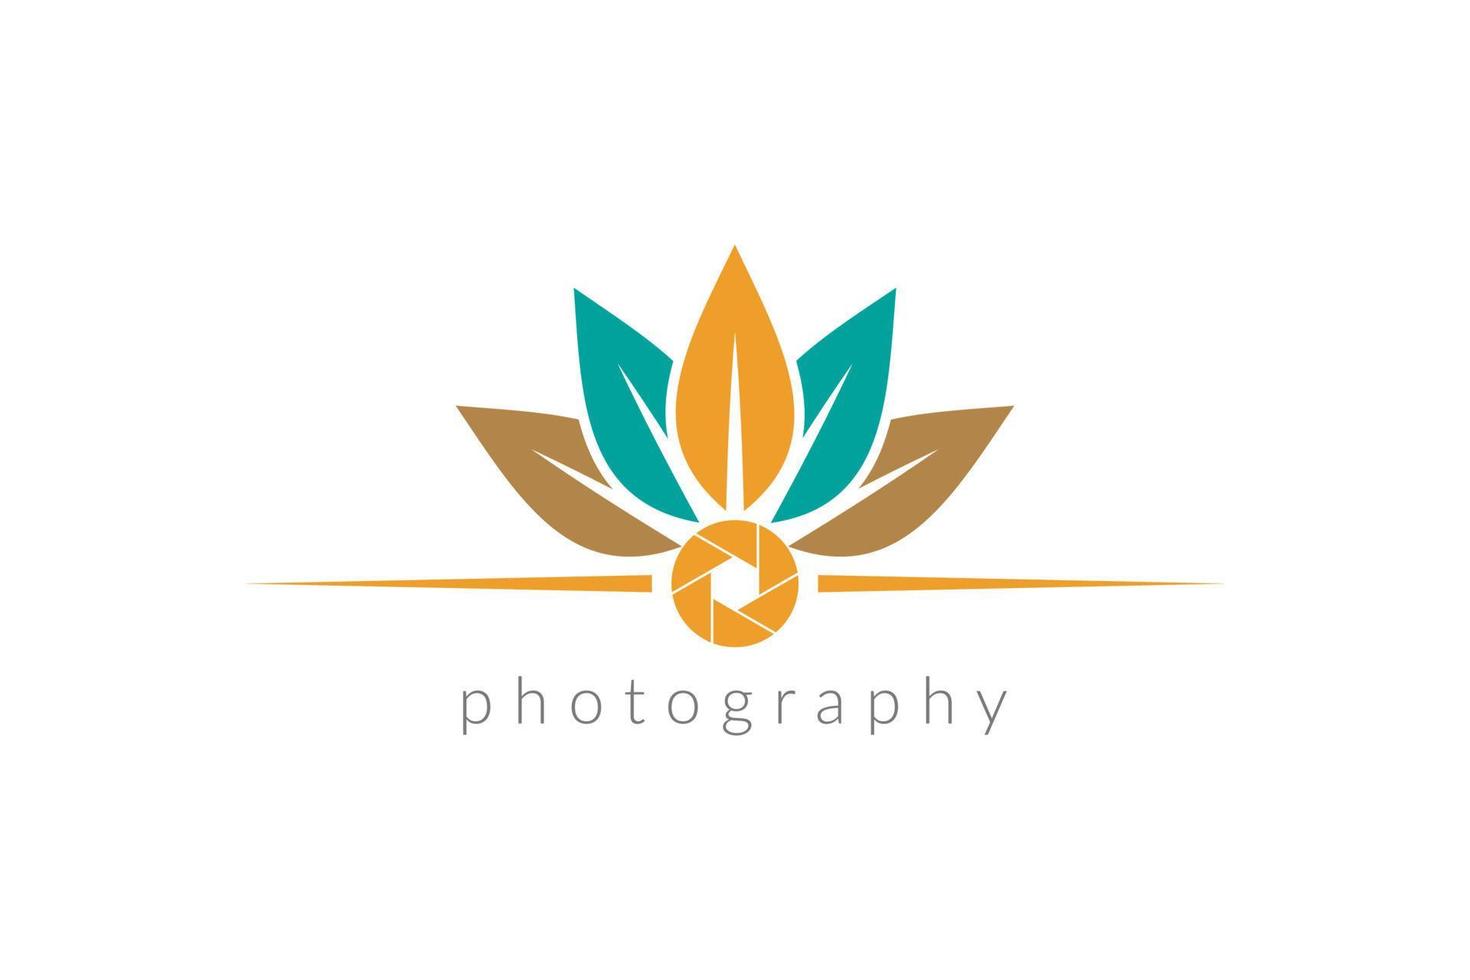 folhas e lente com logotipo de fotografia de tema rústico de cor da natureza vetor